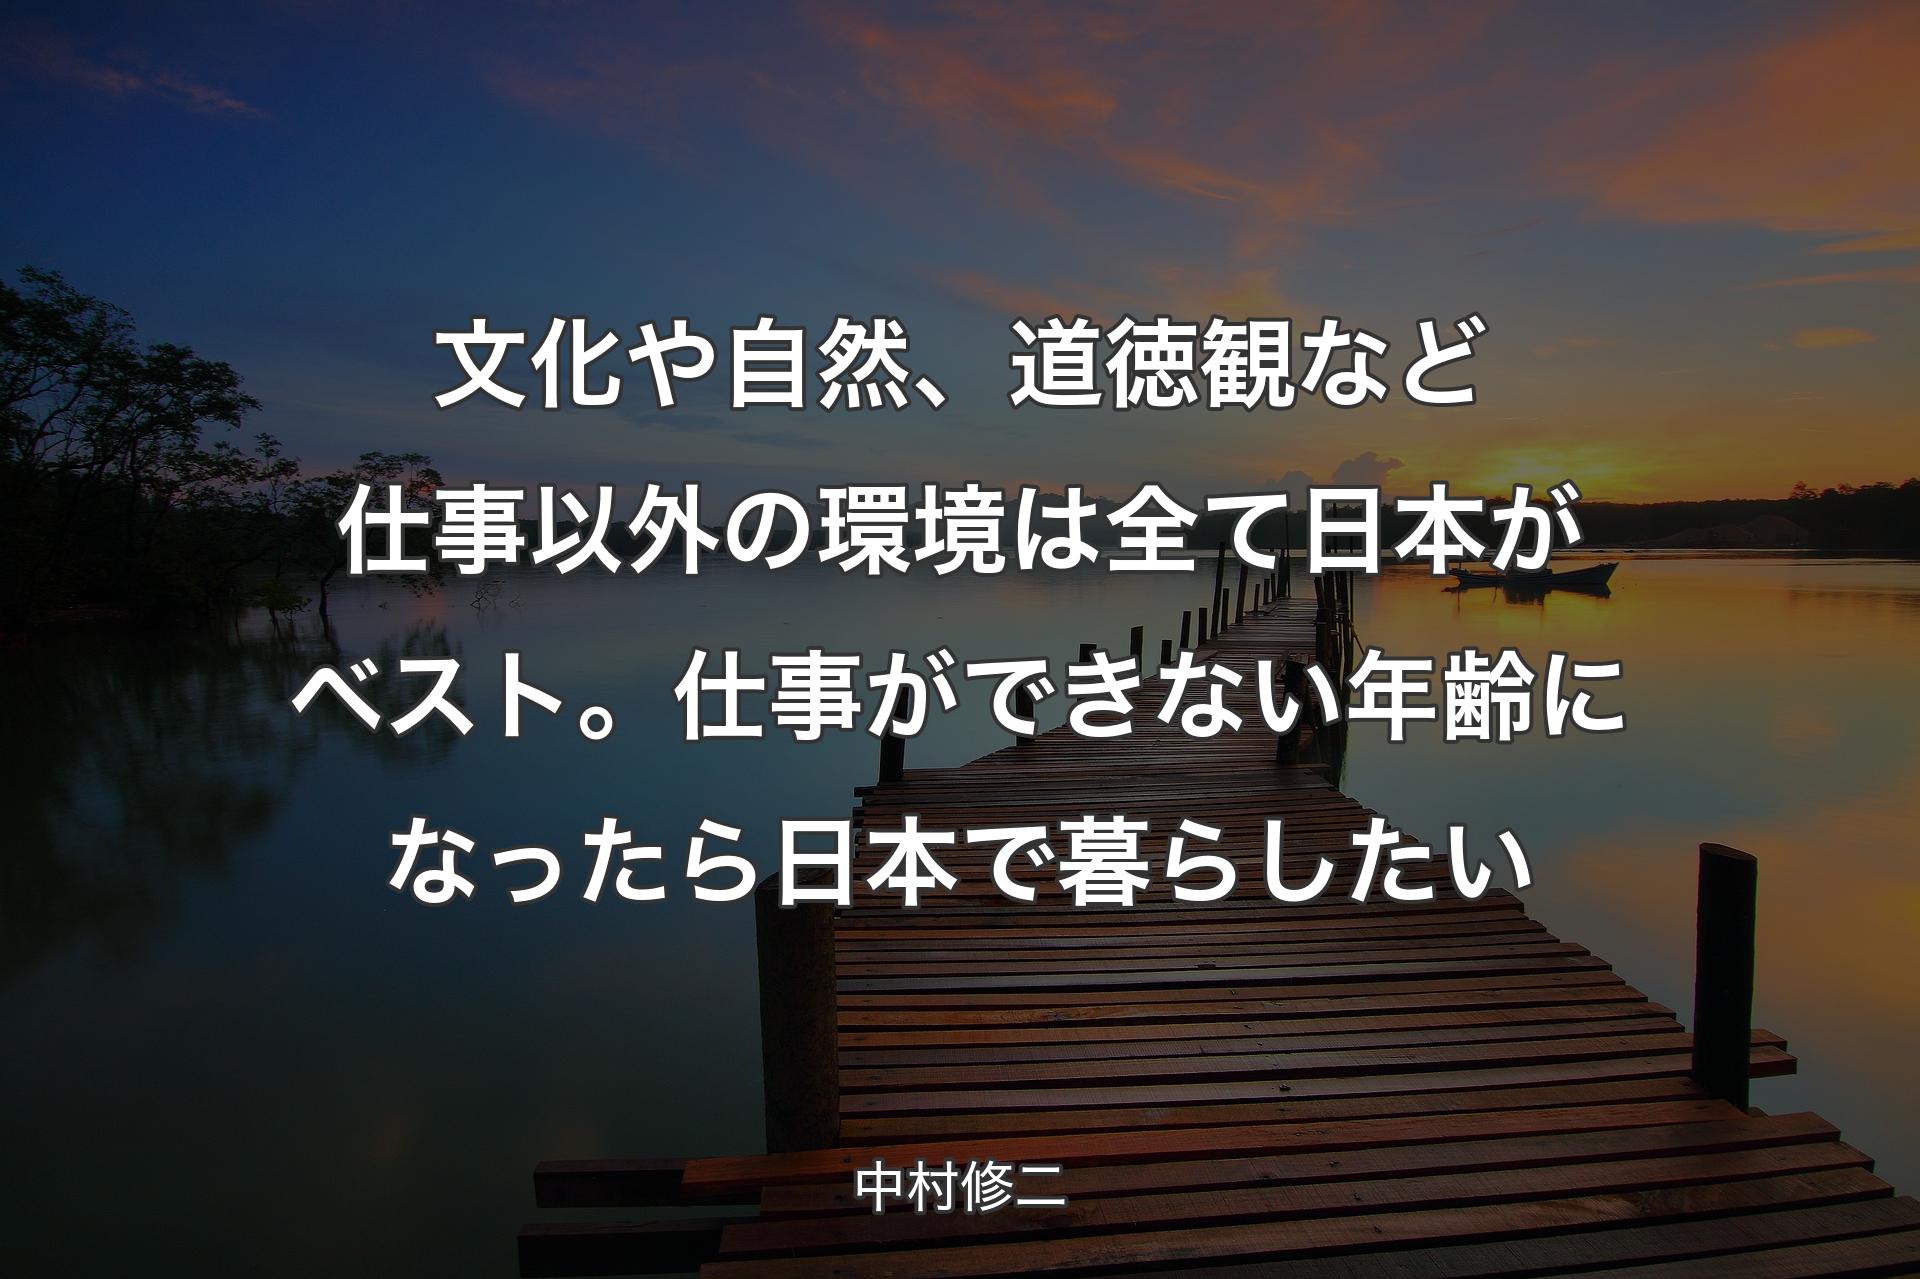 【背景3】文化や自然、道徳観など仕事以外の環境は全て日本がベスト。仕事ができない年齢になったら日本で暮らしたい - 中村修二